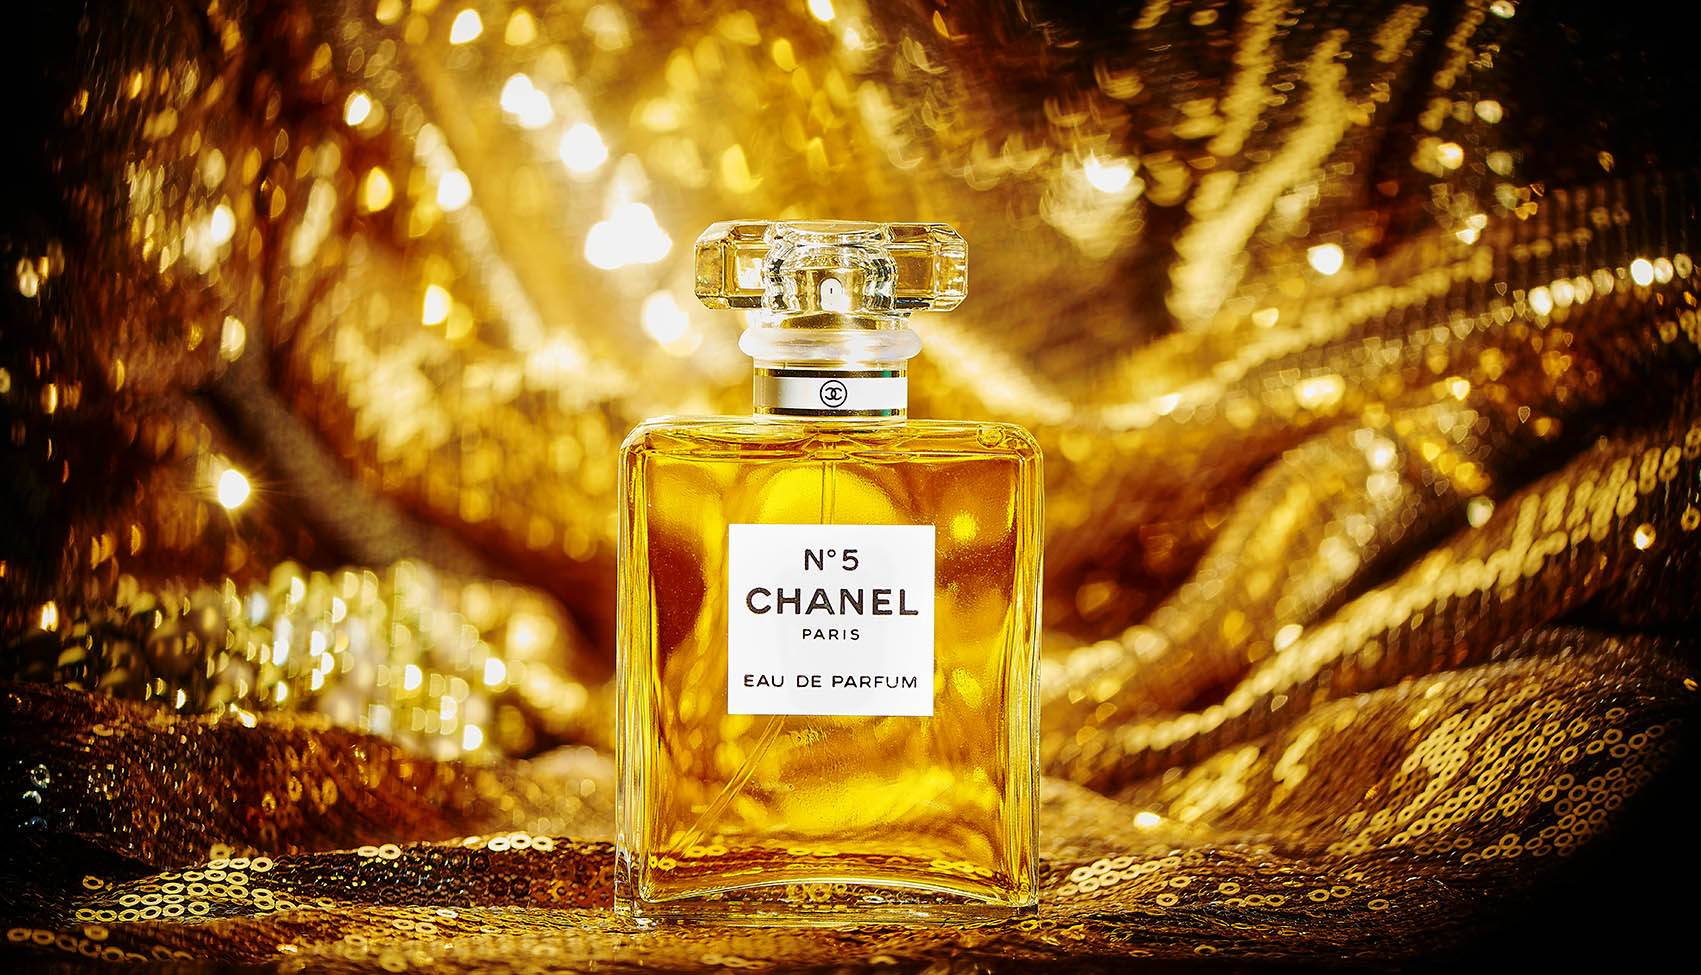 Chanel N°5, recherche personnelle autour du plus mythique des parfums